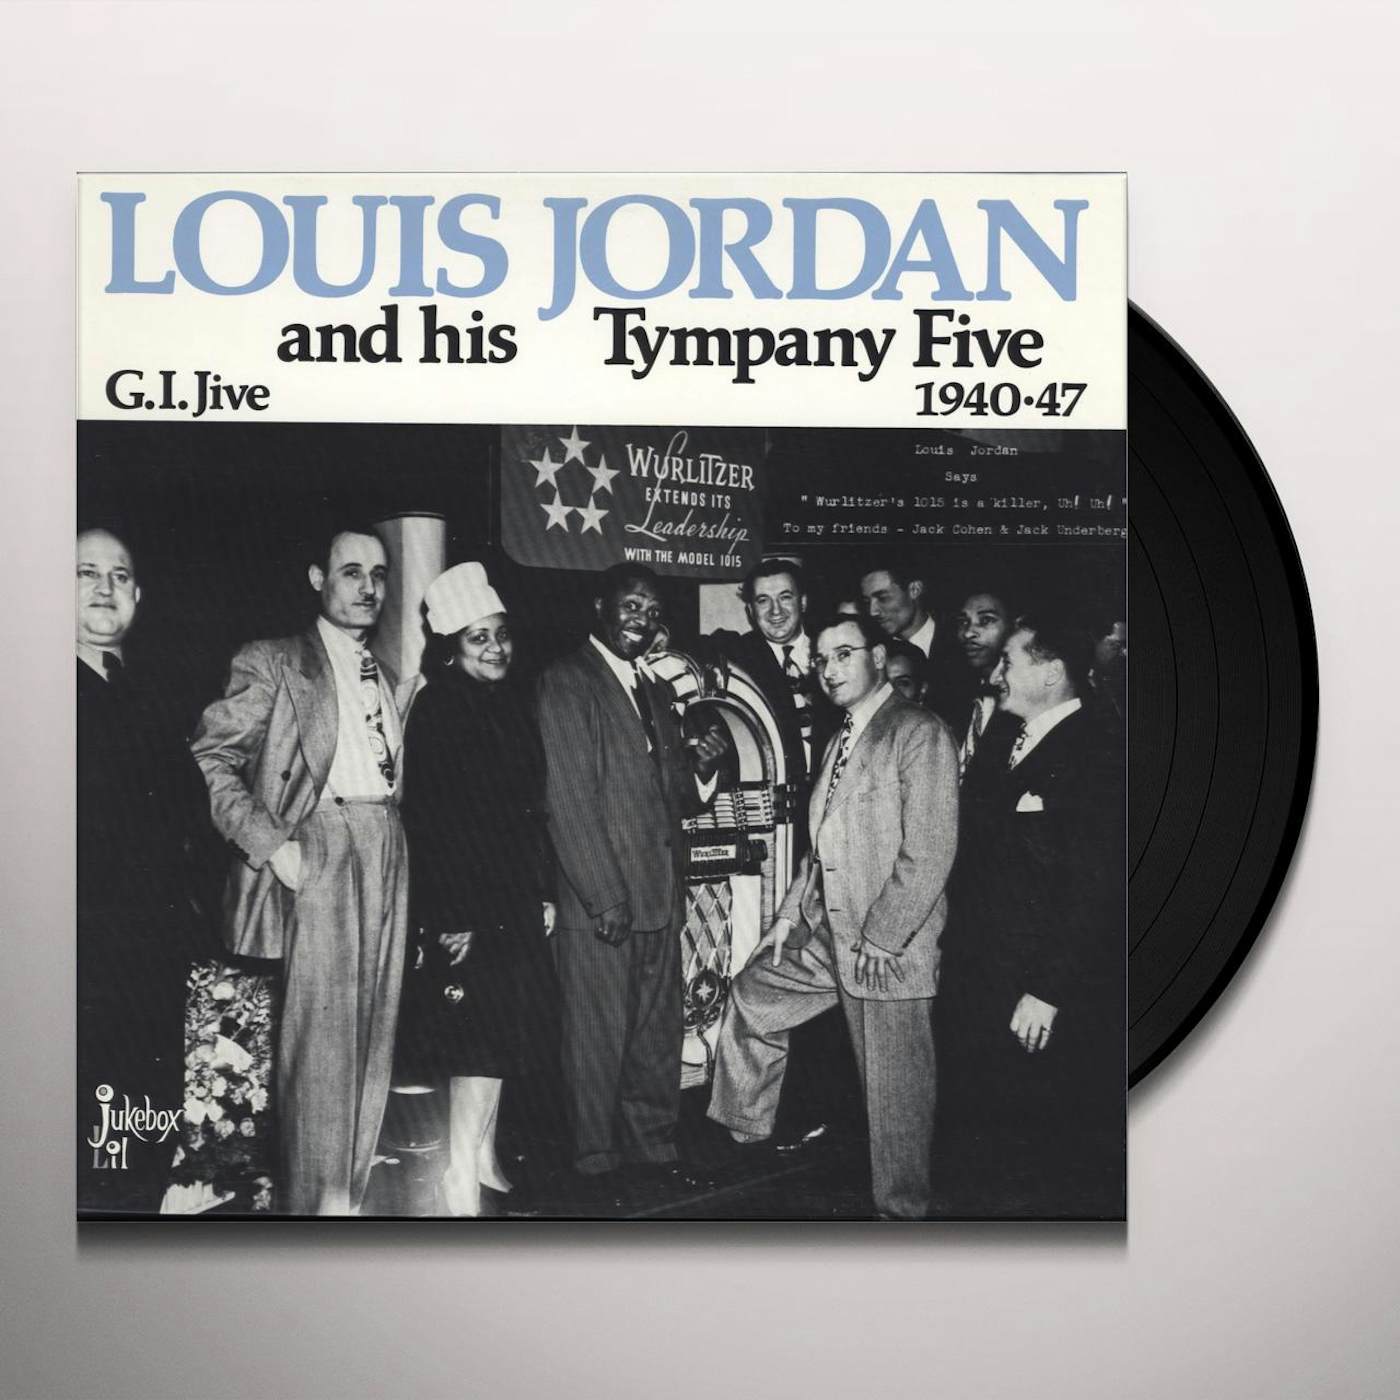 Louis Jordan - Later Years 1953-1957 [CD] 